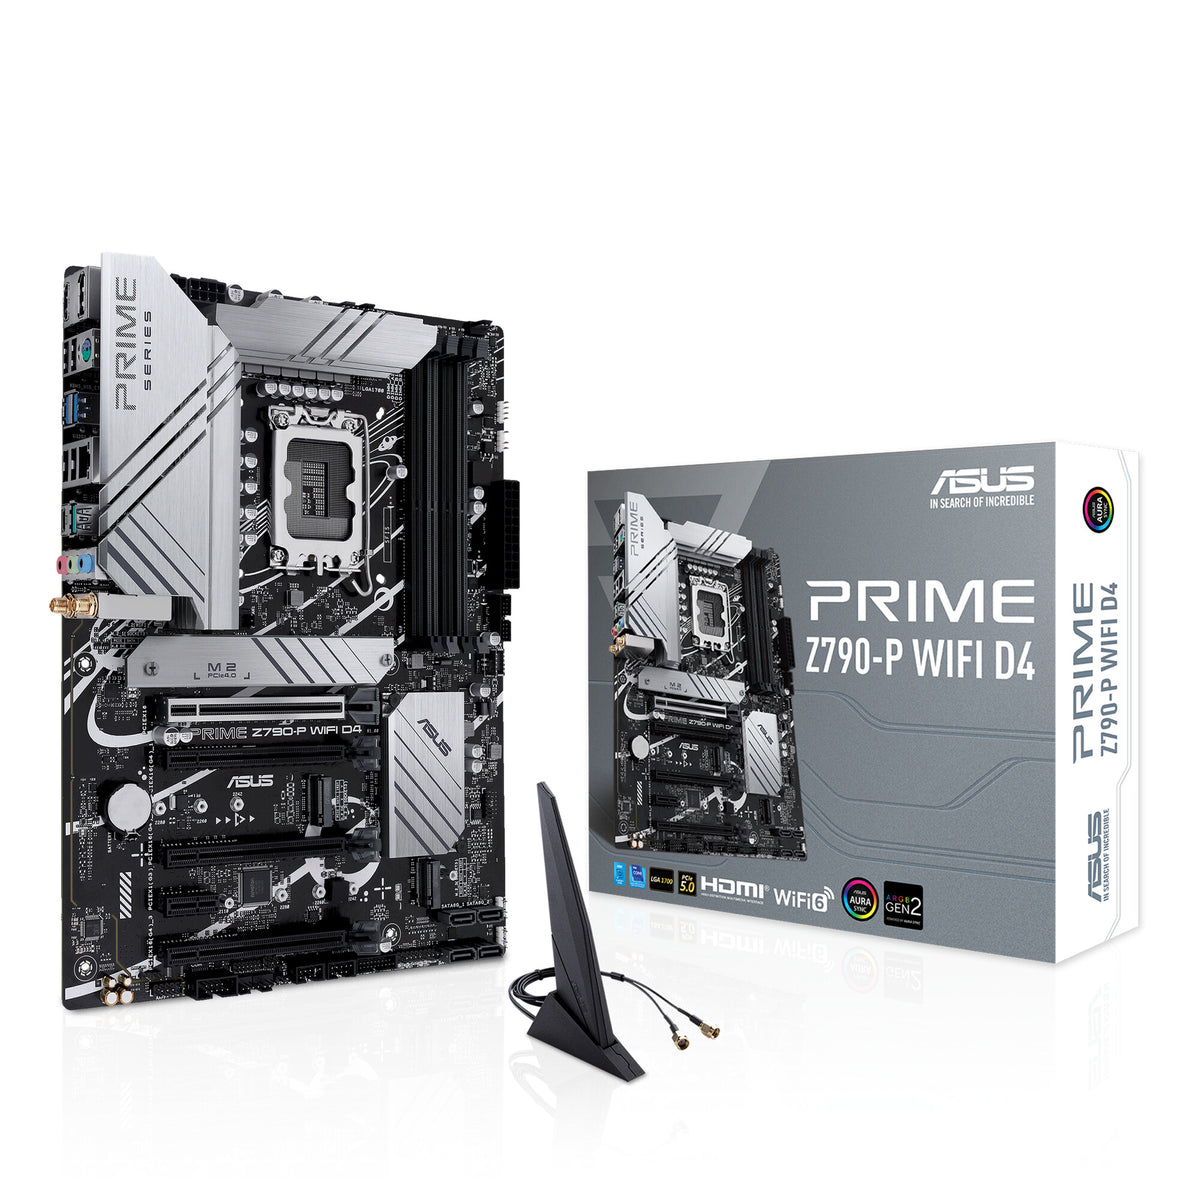 ASUS PRIME Z790-P WIFI D4 ATX motherboard - Intel Z790 LGA 1700